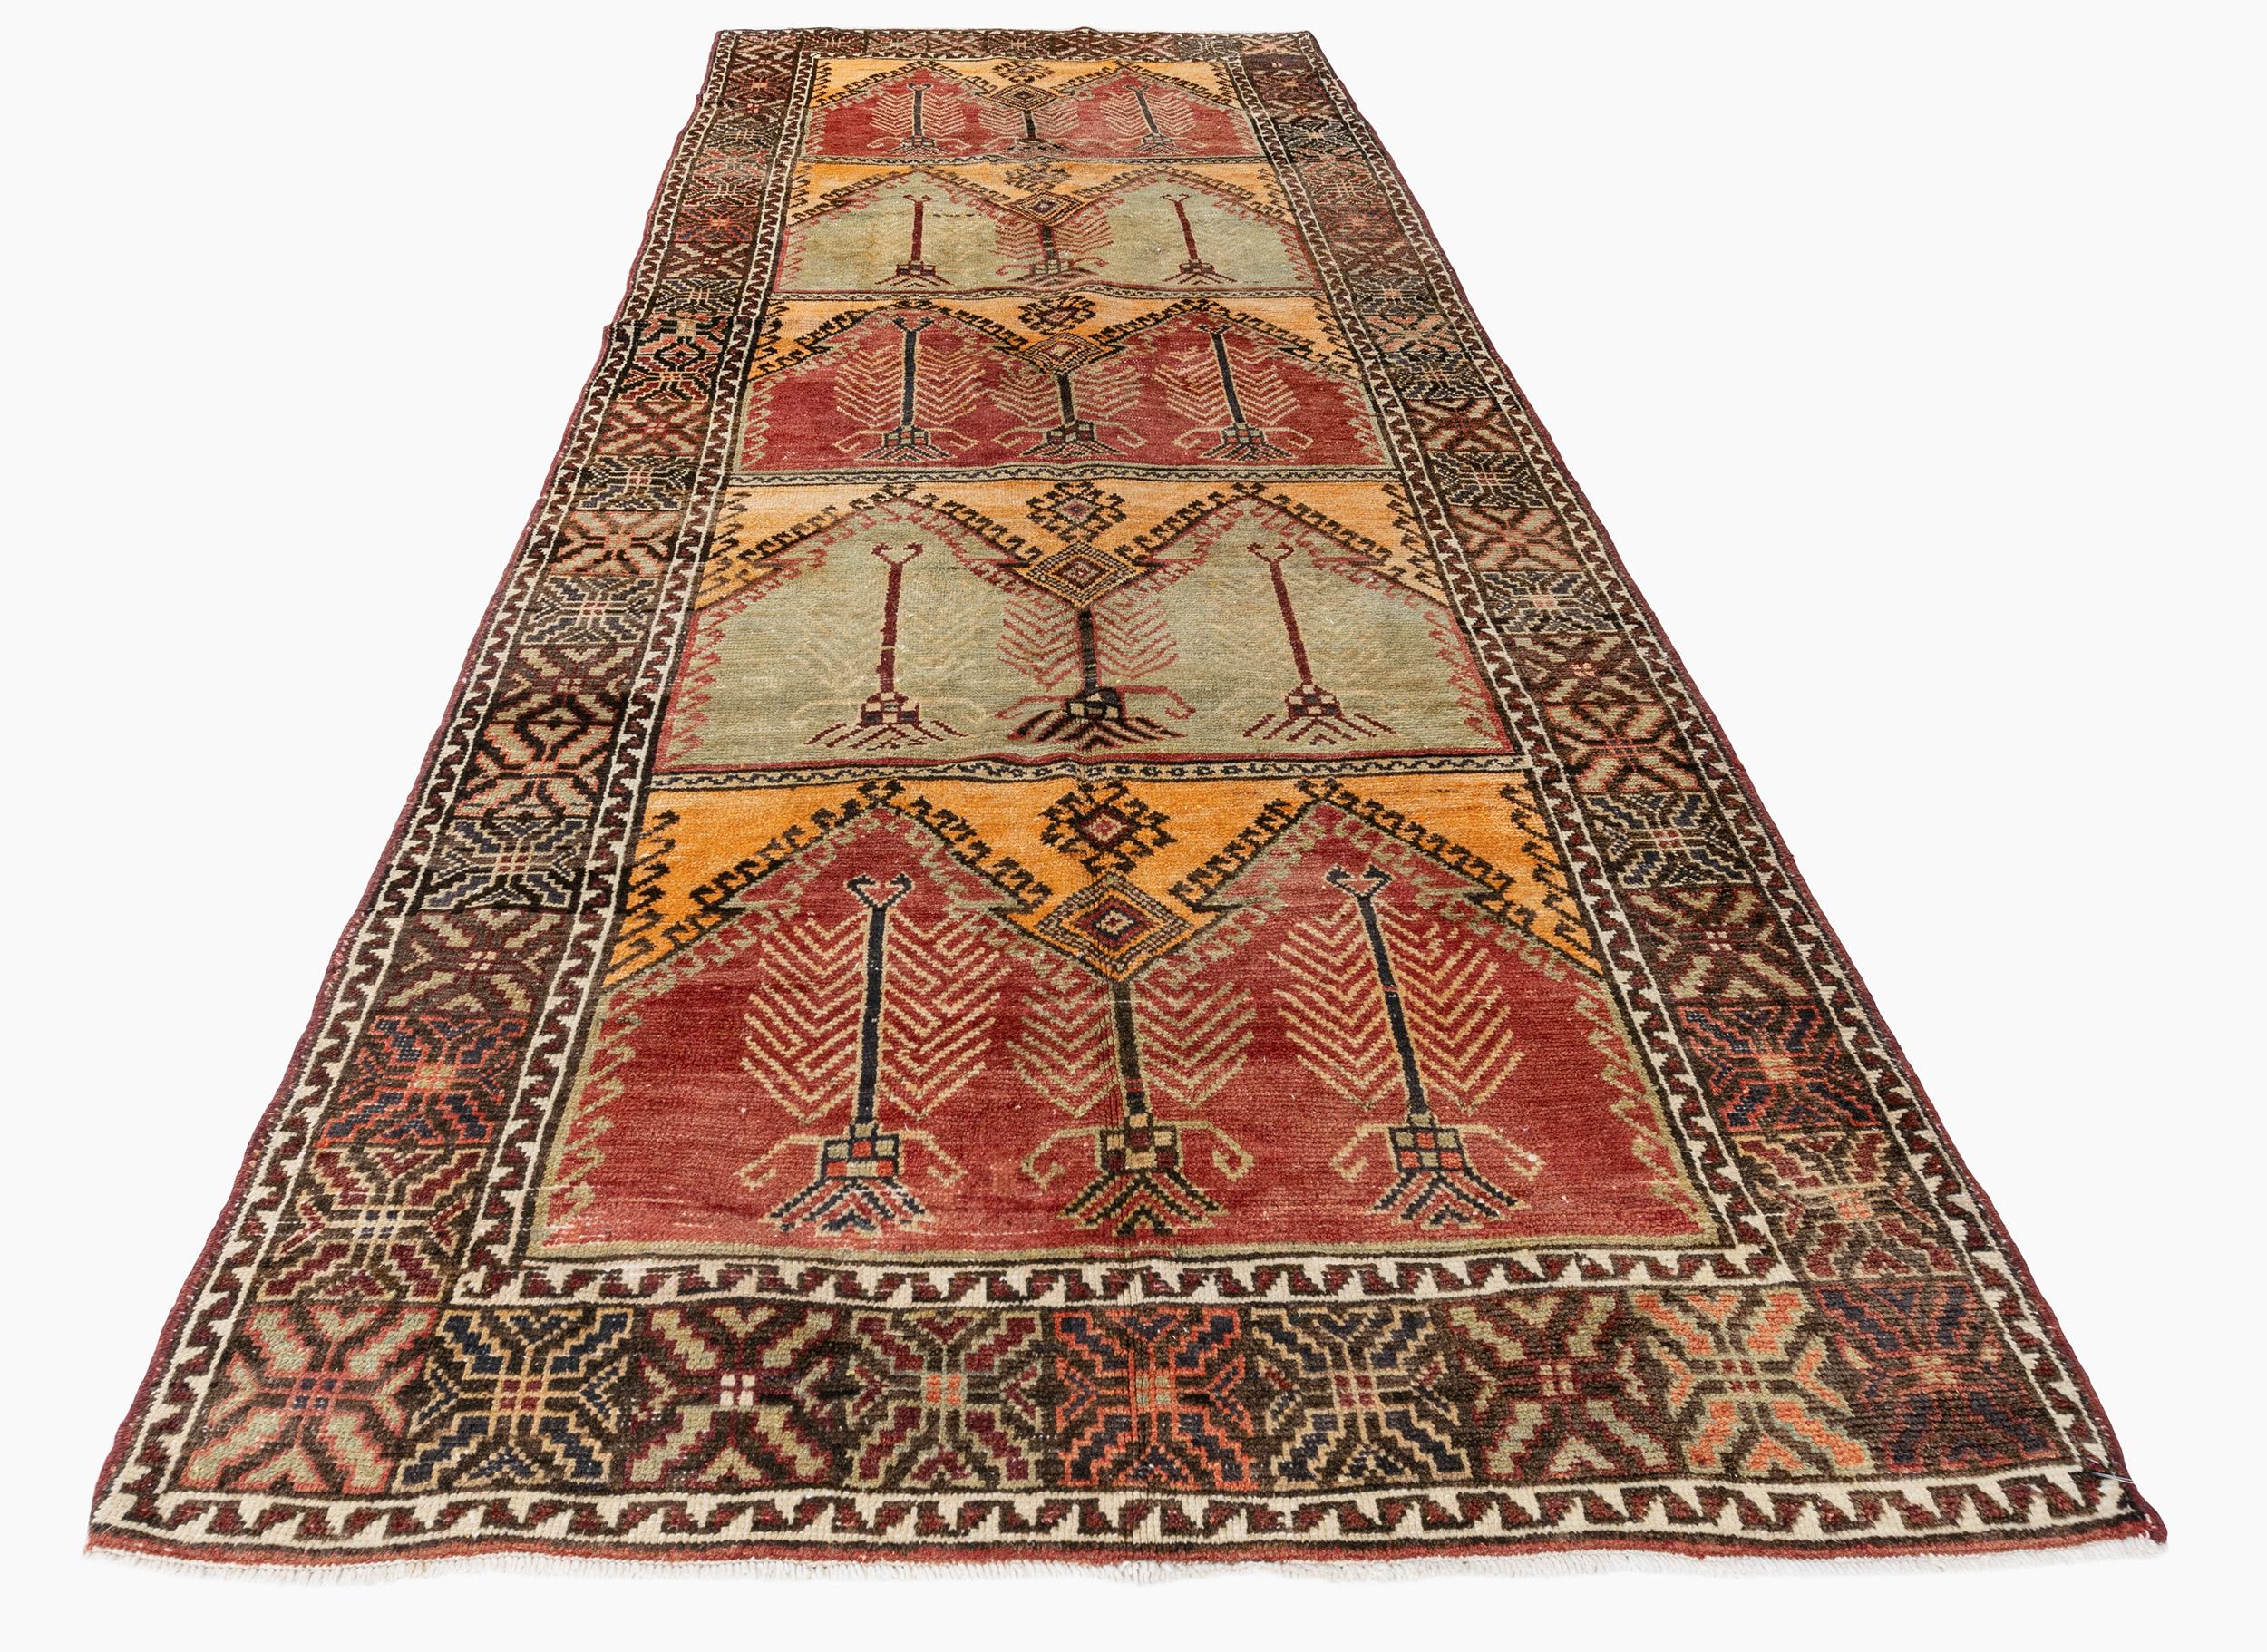 Vieux tapis turc Oushak 4'9 X 12'8. La qualité luxueuse de la laine (pour laquelle les Oushaks ont toujours été célèbres) a contribué à la vivacité des couleurs. Contrairement à la plupart des tapis turcs, les tapis Oushak ont été fortement